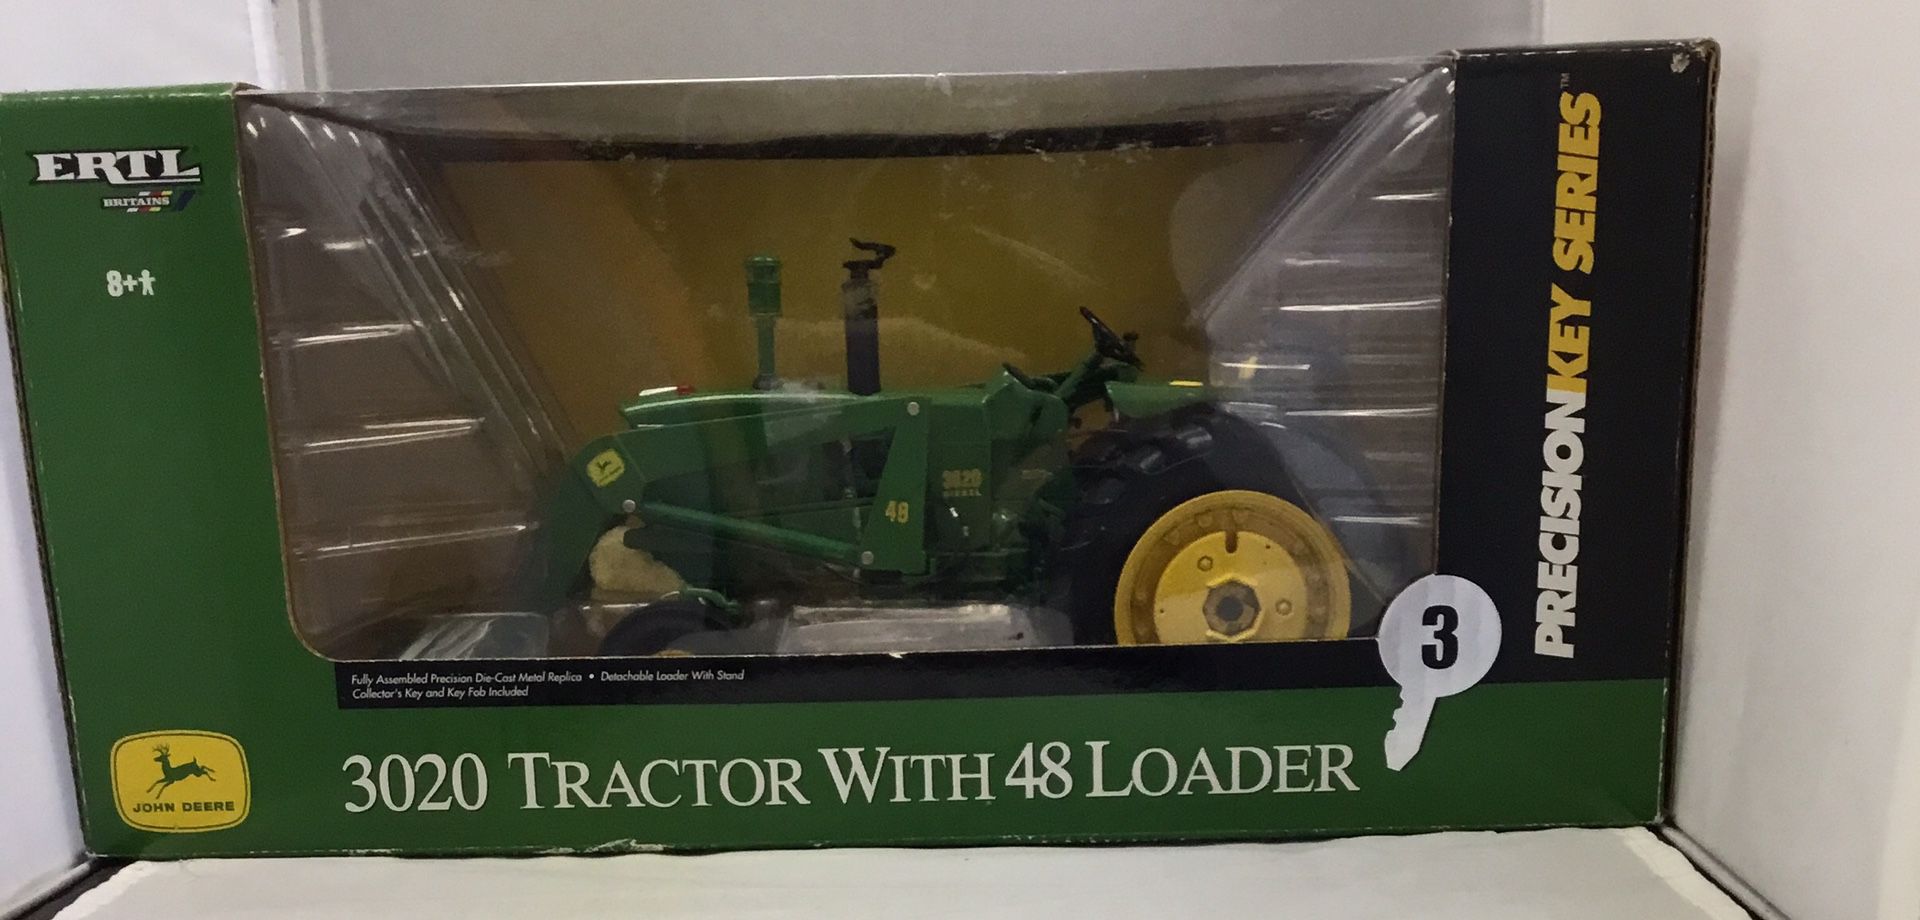 Collectors John Deere Tractor